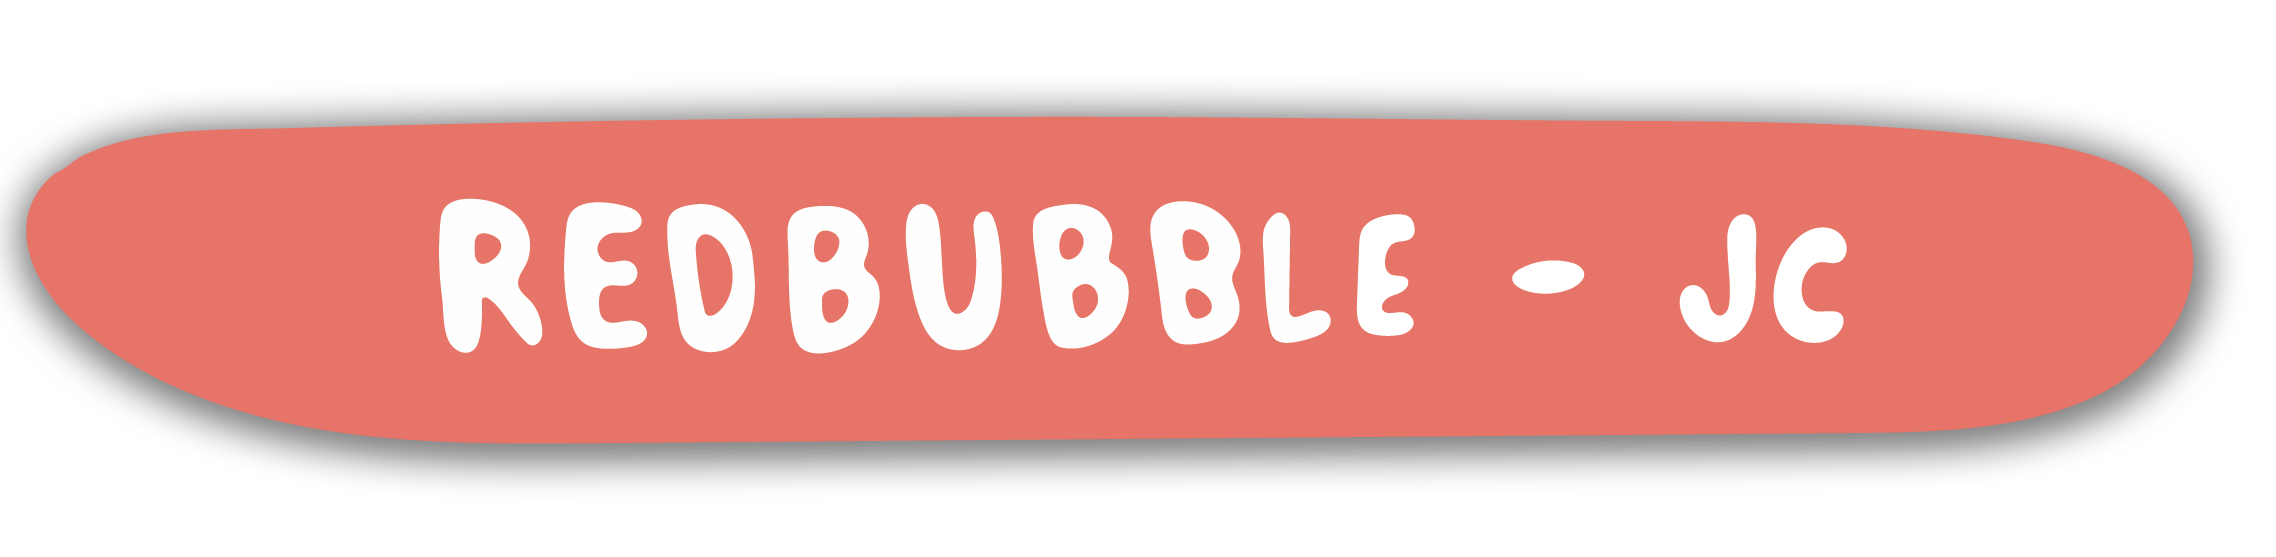 Redbubble_button